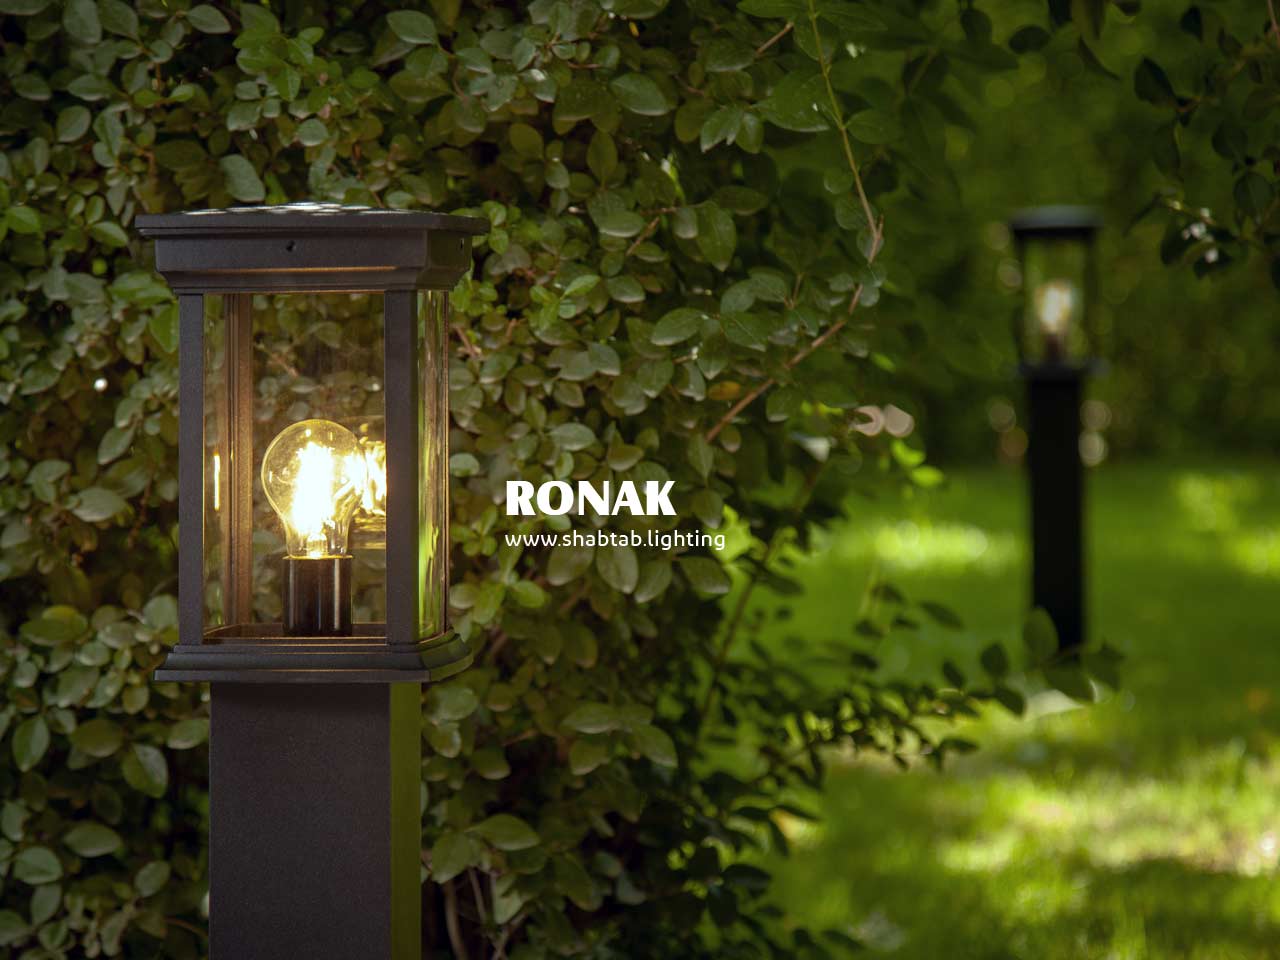 چراغ چمنی لوکس روناک برای زیباسازی محوطه باغ و منزل